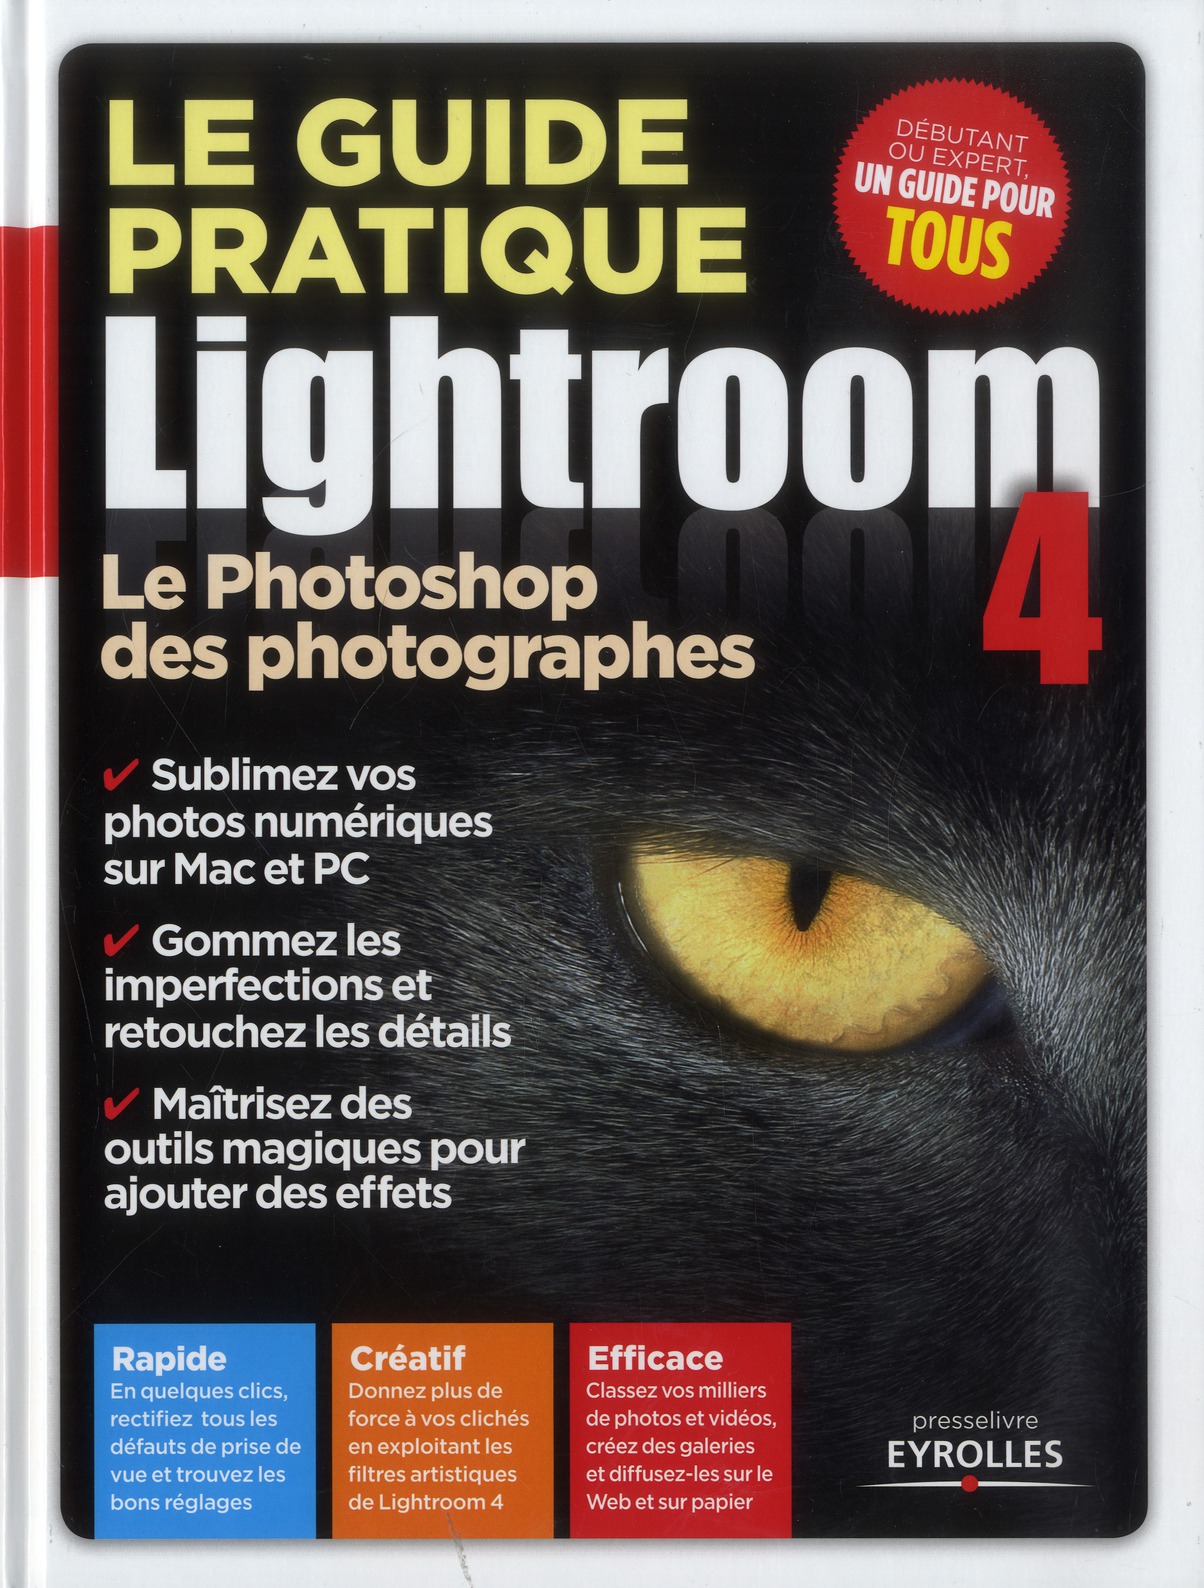 LE GUIDE PRATIQUE LIGHTROOM 4 - LE PHOTOSHOP DES PHOTOGRAPHES. RAPIDE. CREATIF. EFFICACE.